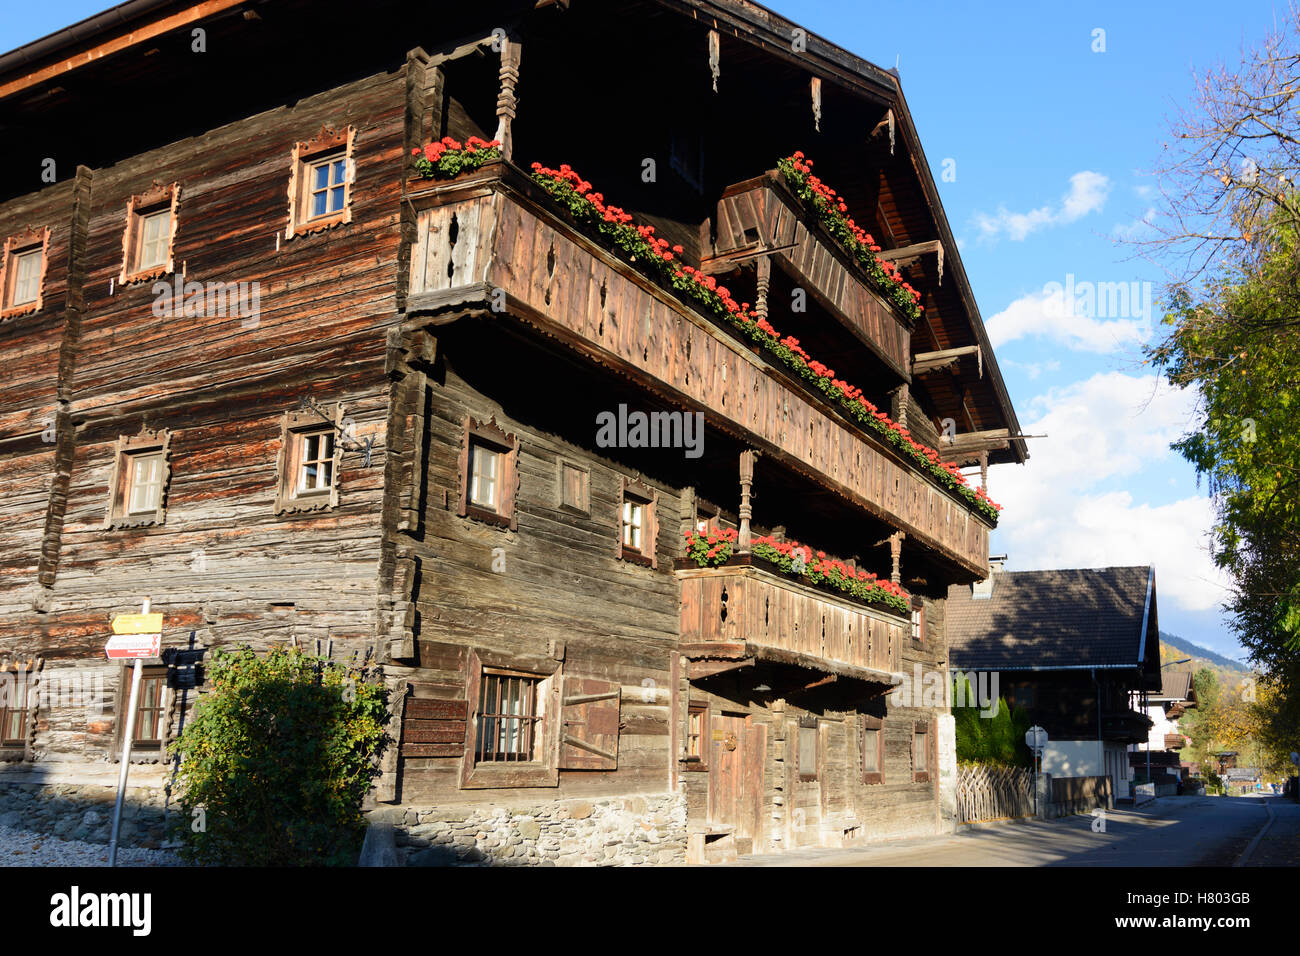 Historique : Stuhlfelden, maison en bois, balcon, fleurs, Tyrol, Salzbourg, Autriche Banque D'Images